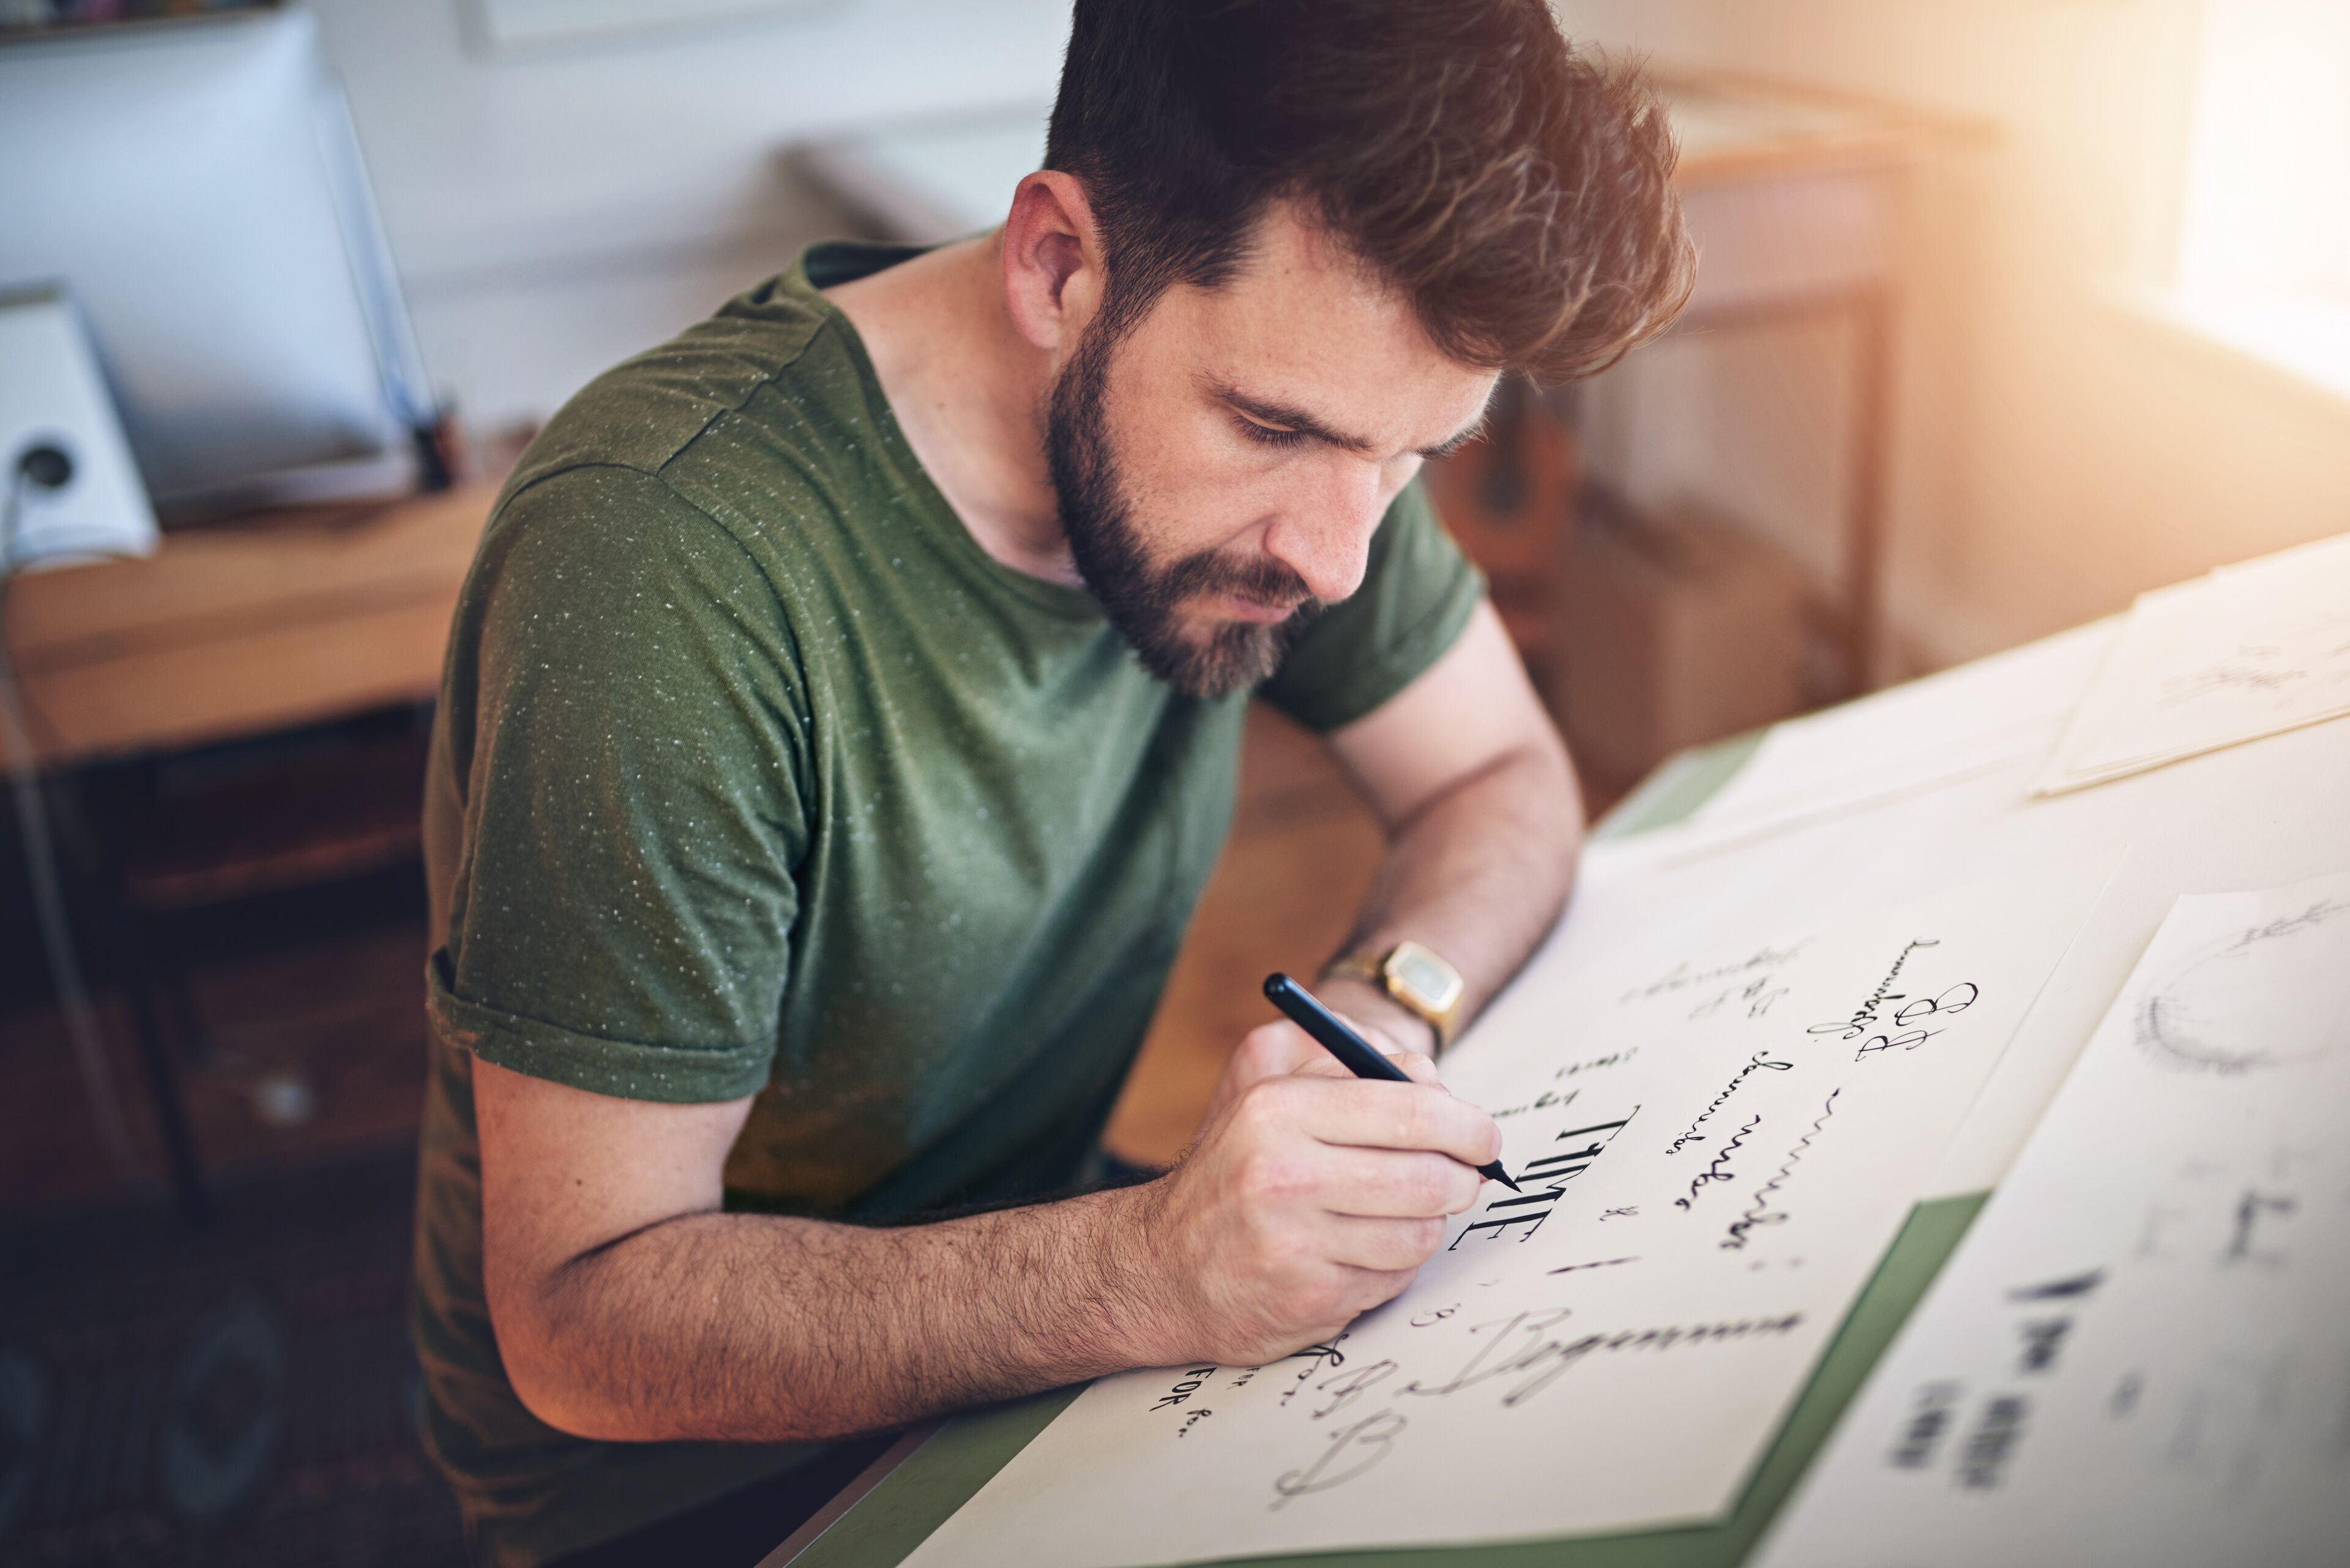 Un hombre adulto con barba está concentrado dibujando diseños en una hoja grande de papel, usando un bolígrafo en una habitación iluminada.